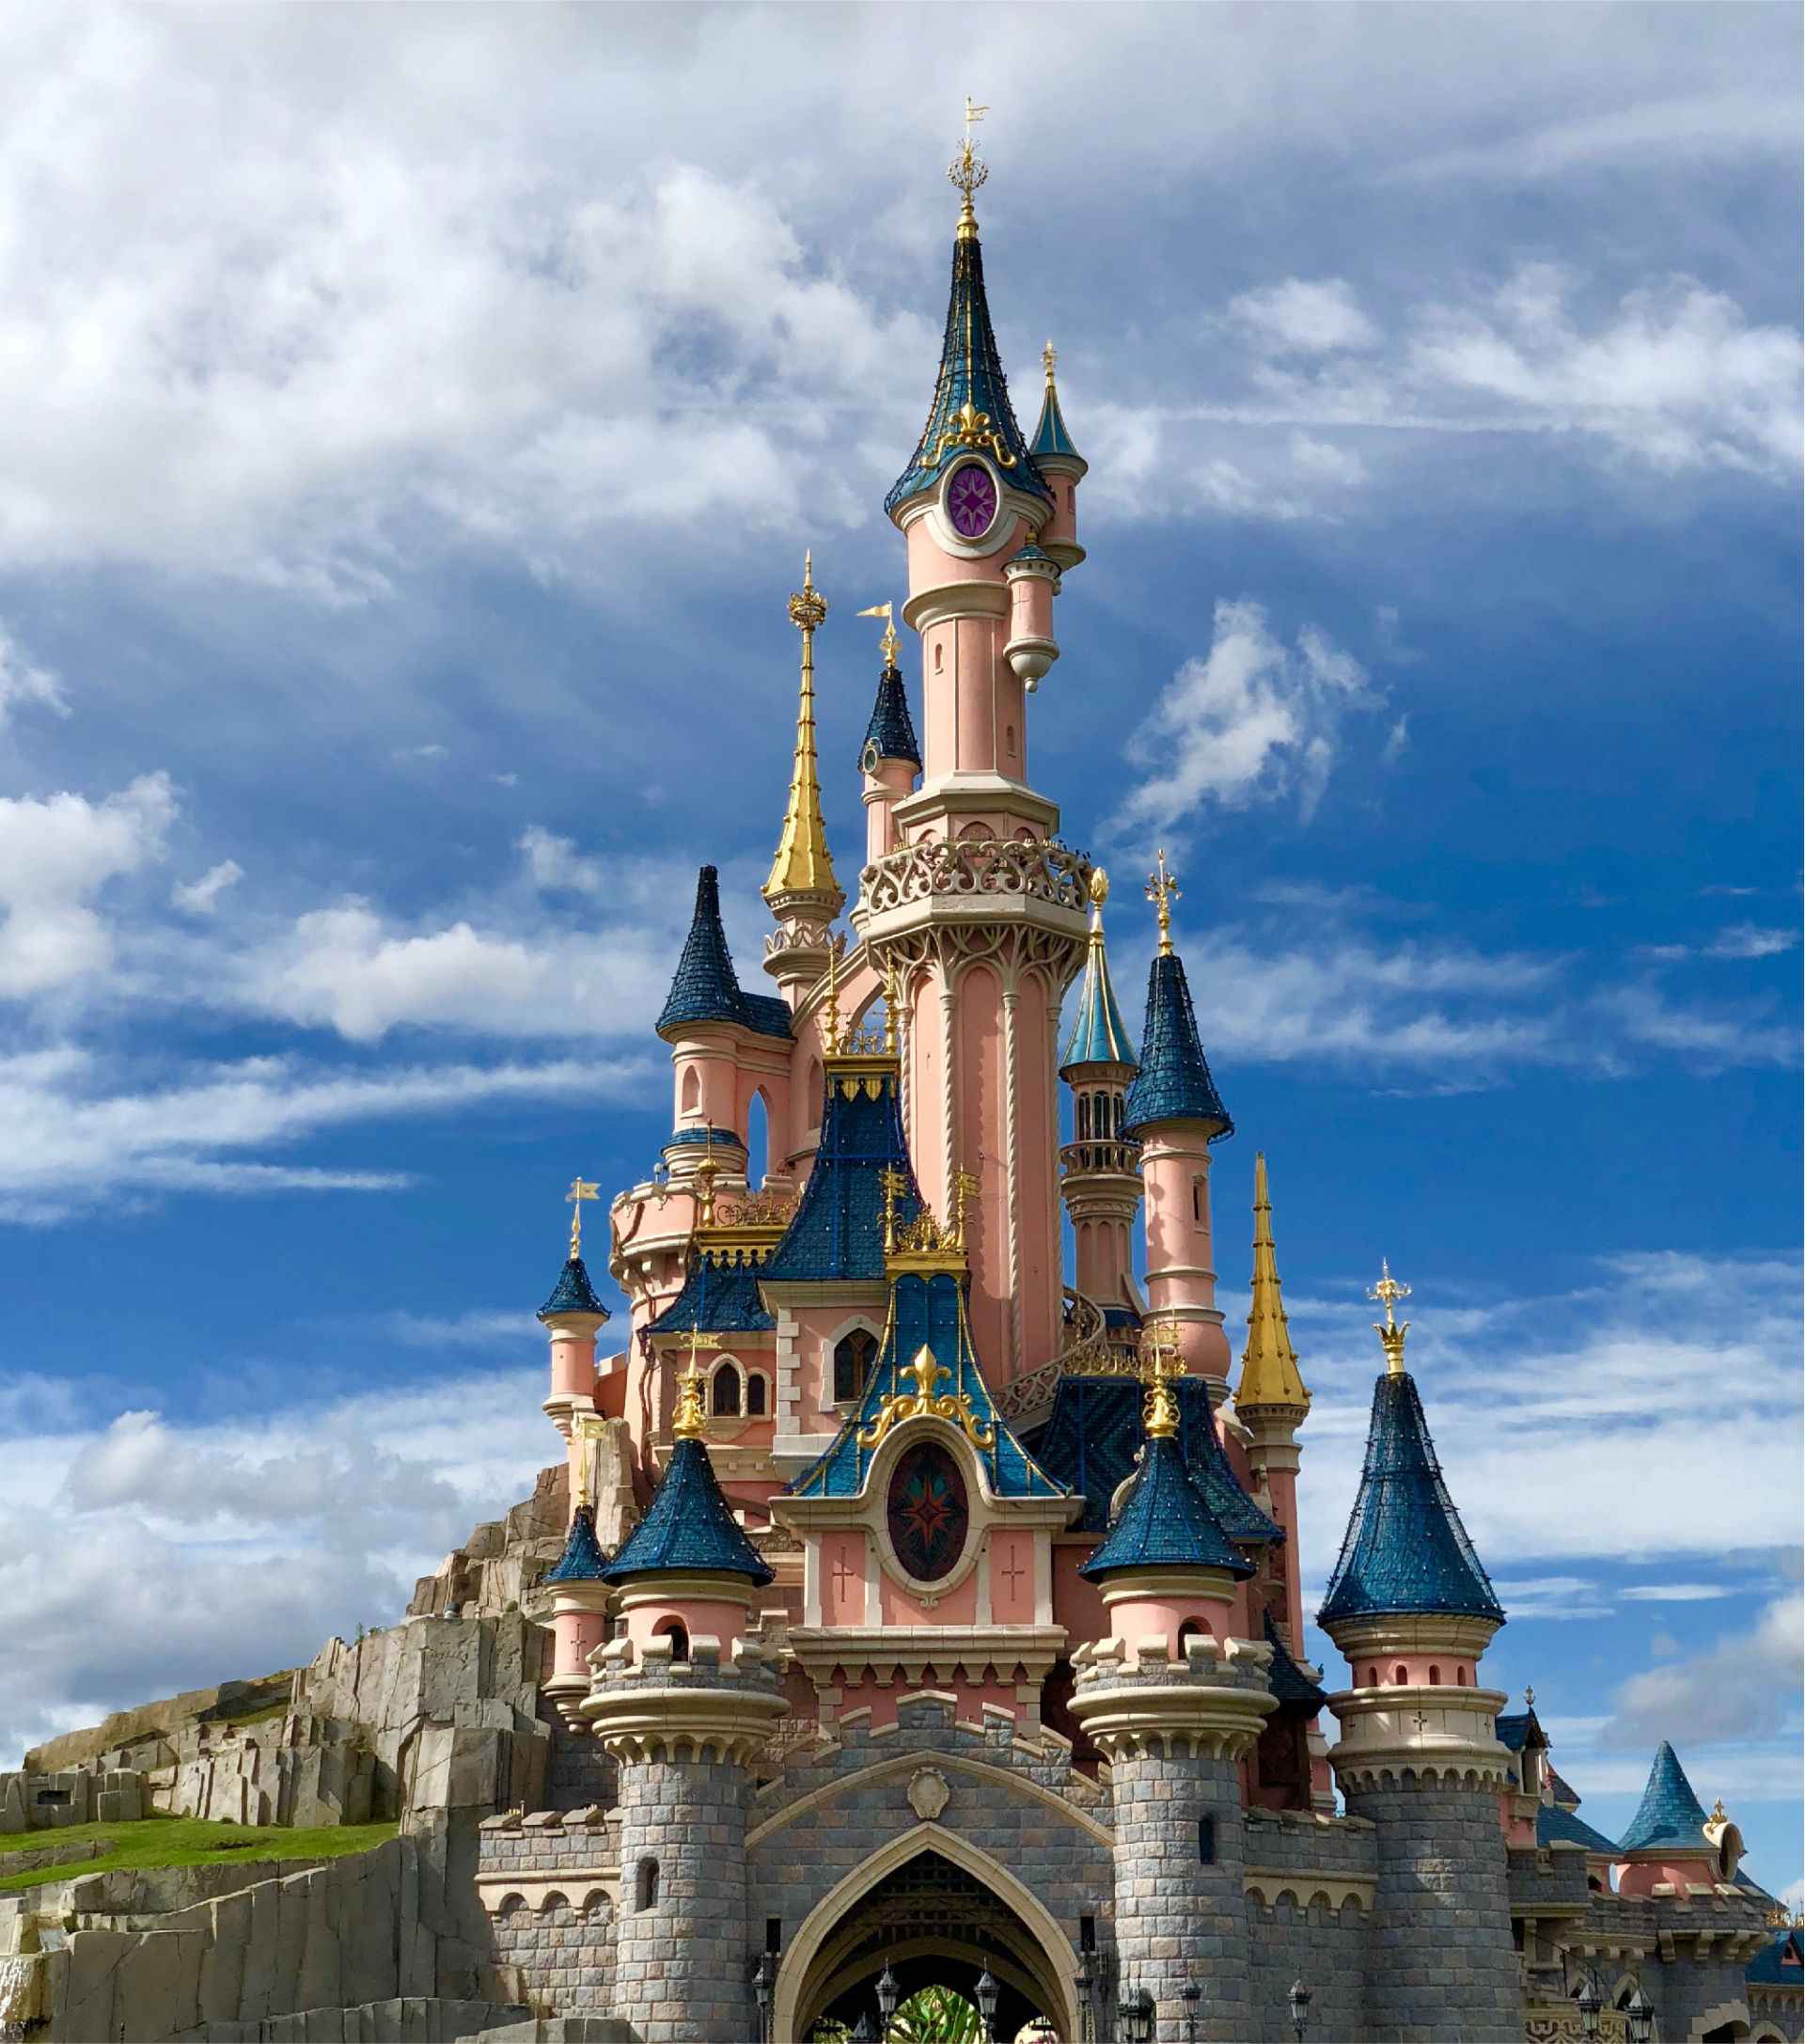 Un hôtel proche de Disneyland® Paris - Réservez ACE Hôtel